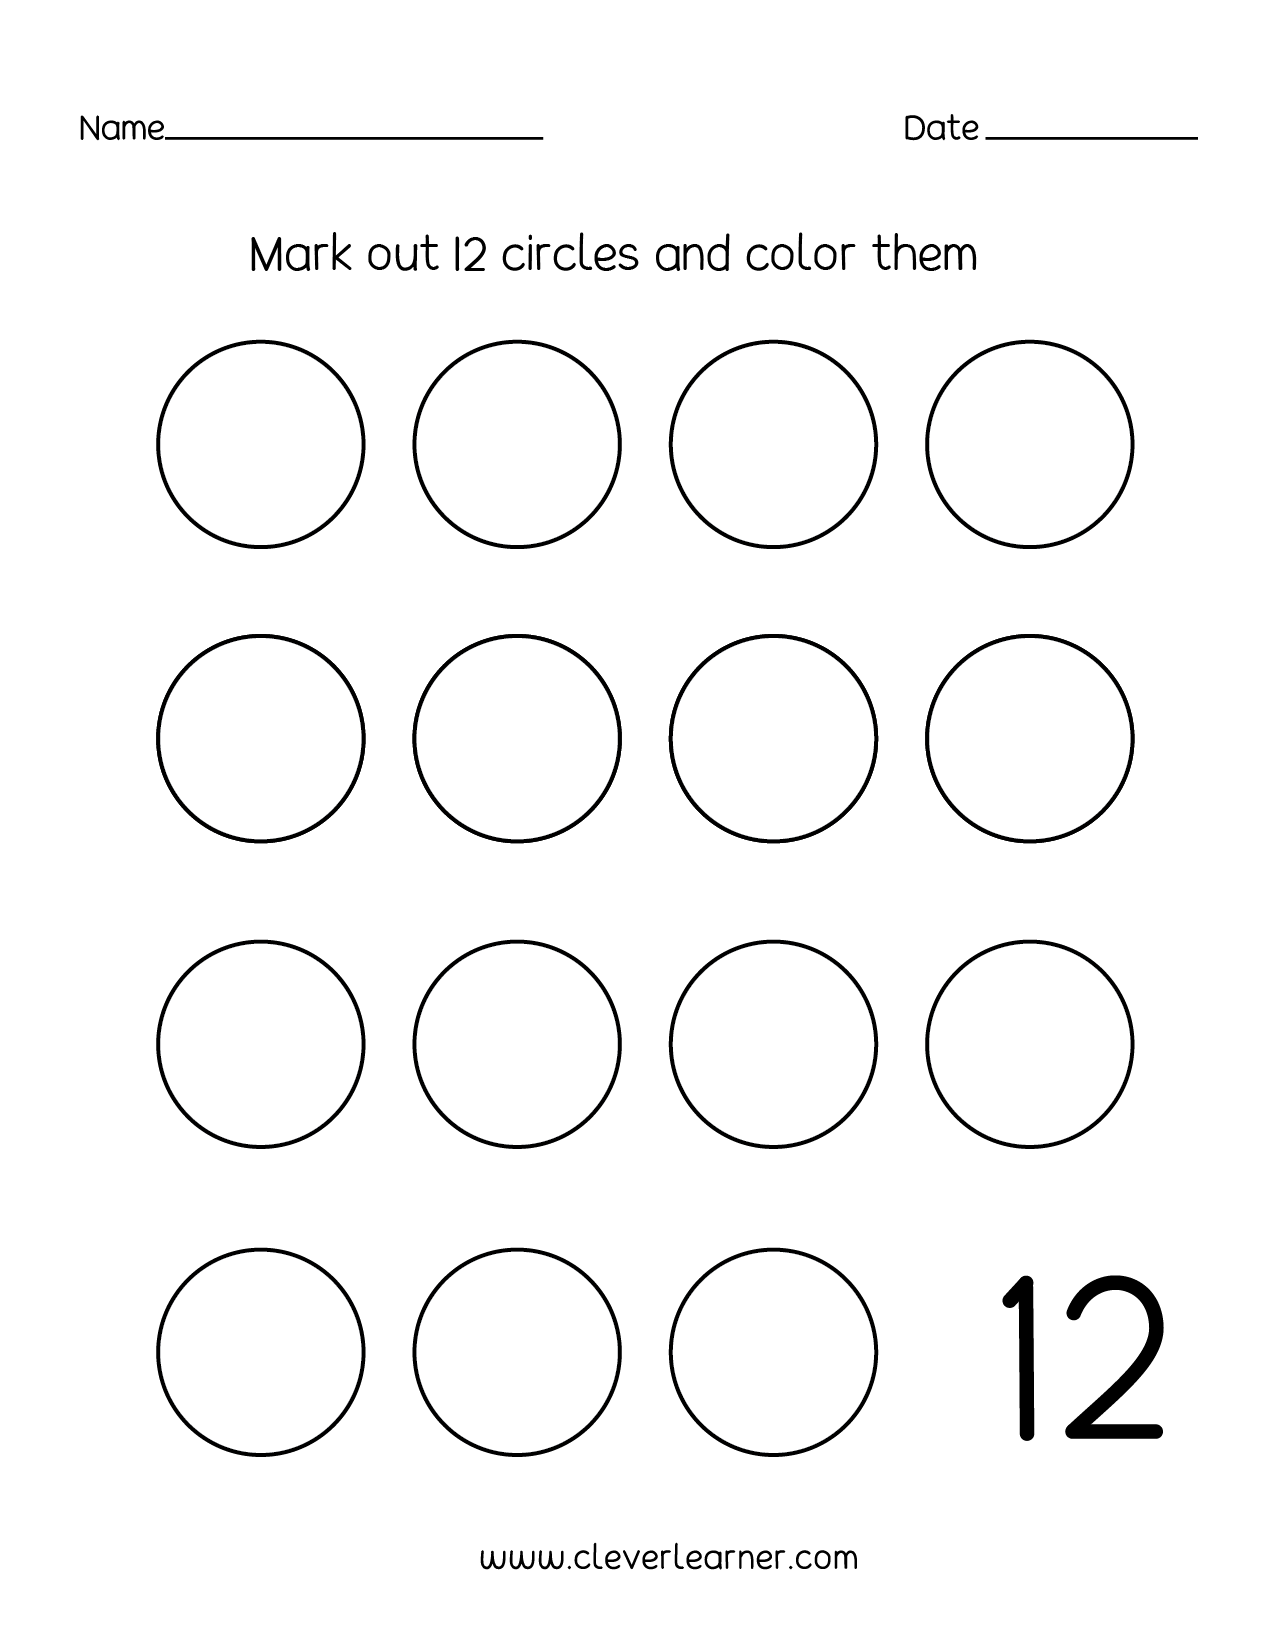 Missing Number Activities For Preschoolers Number Worksheets Eleven Writing Activities Practice